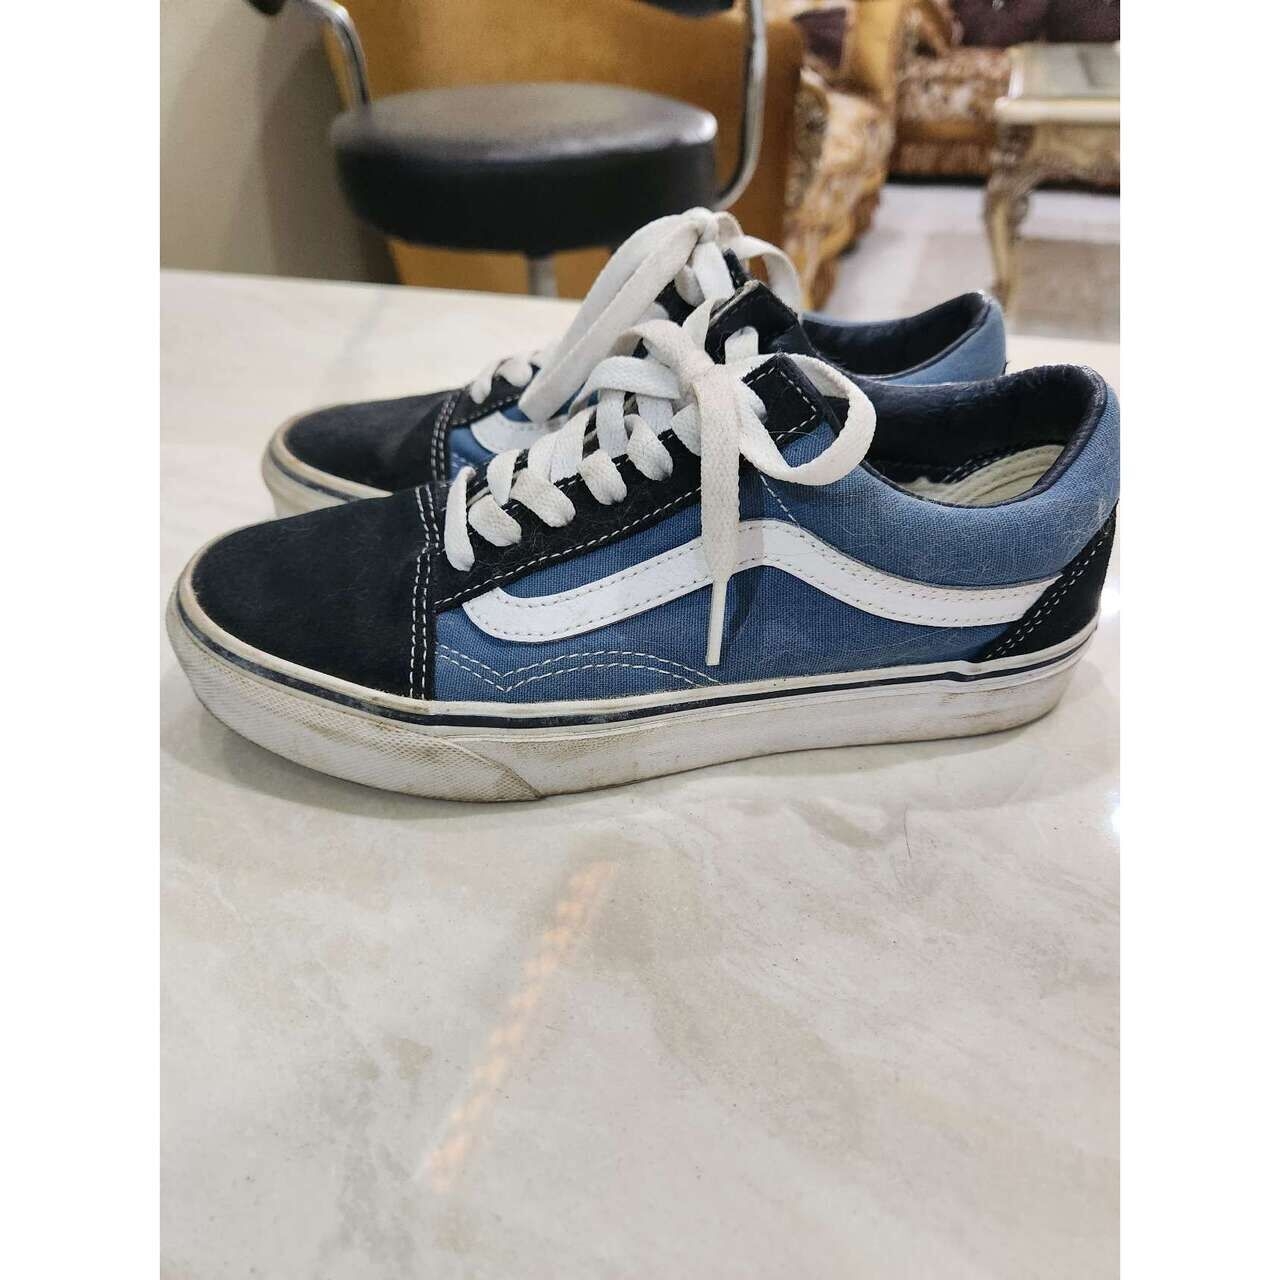 Vans Blue & Black Sneakers